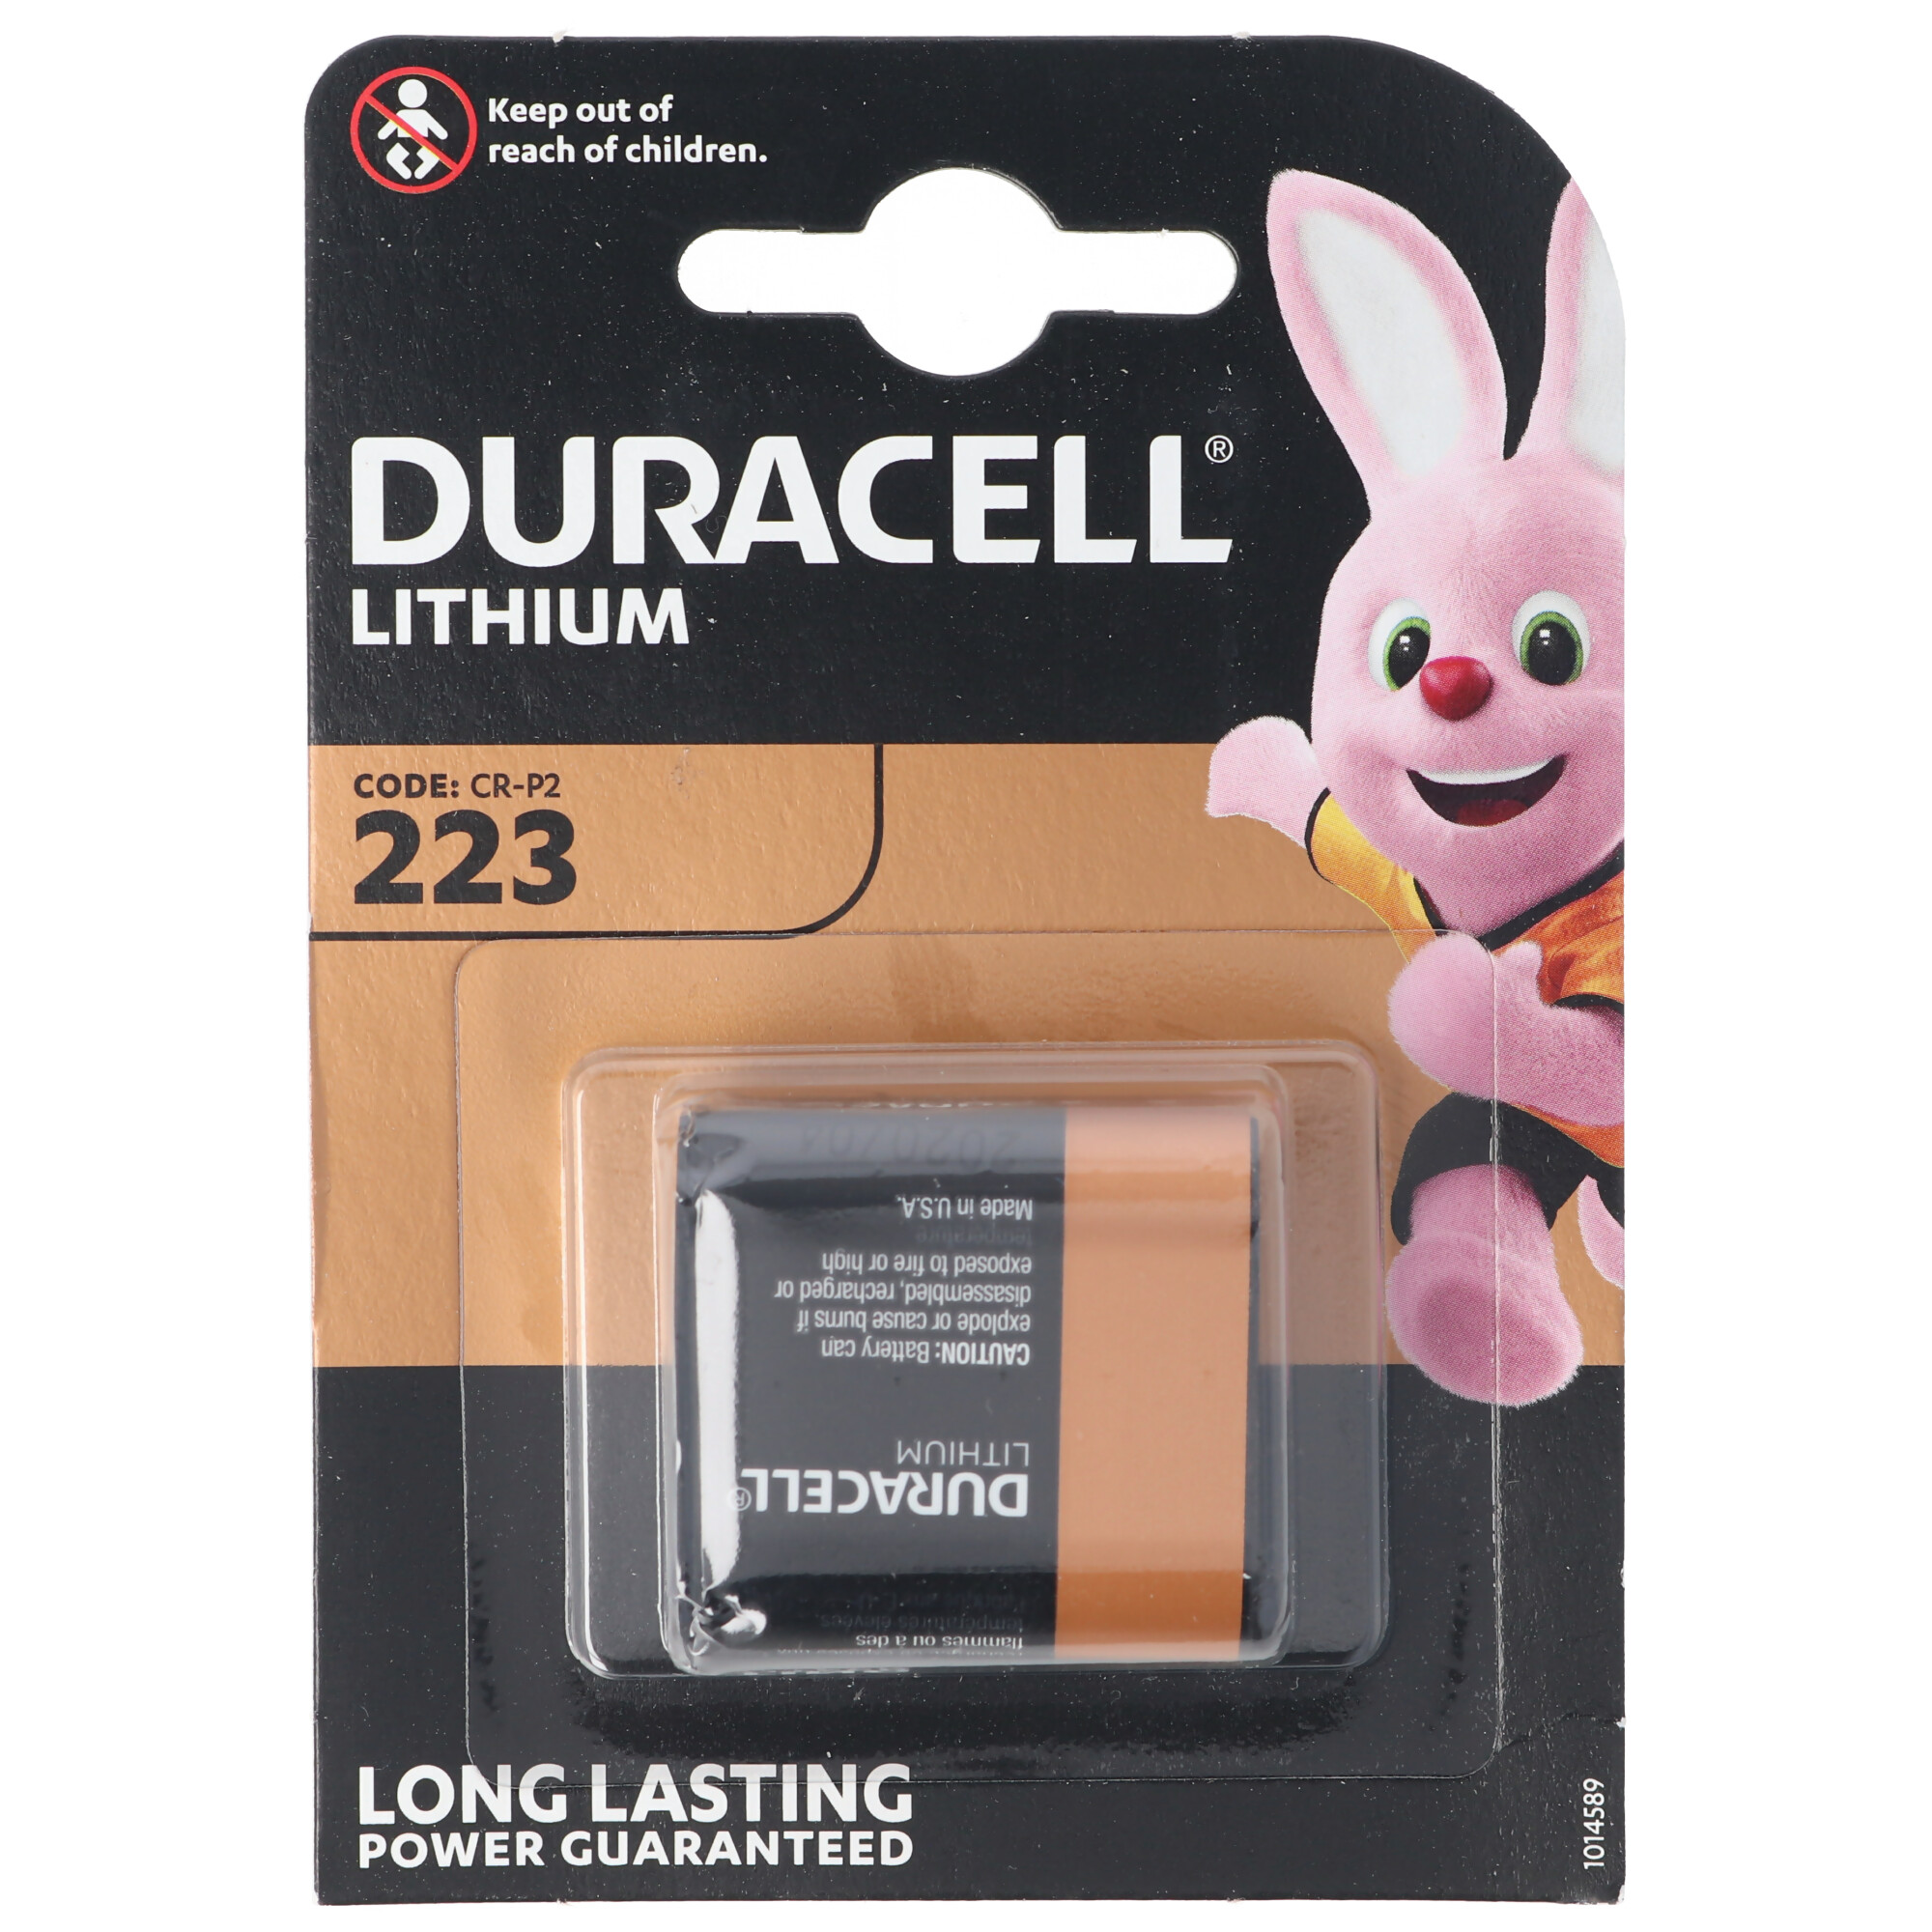 2 Duracell High Power CR-P2 DL223 Lithium Batterien Blister 